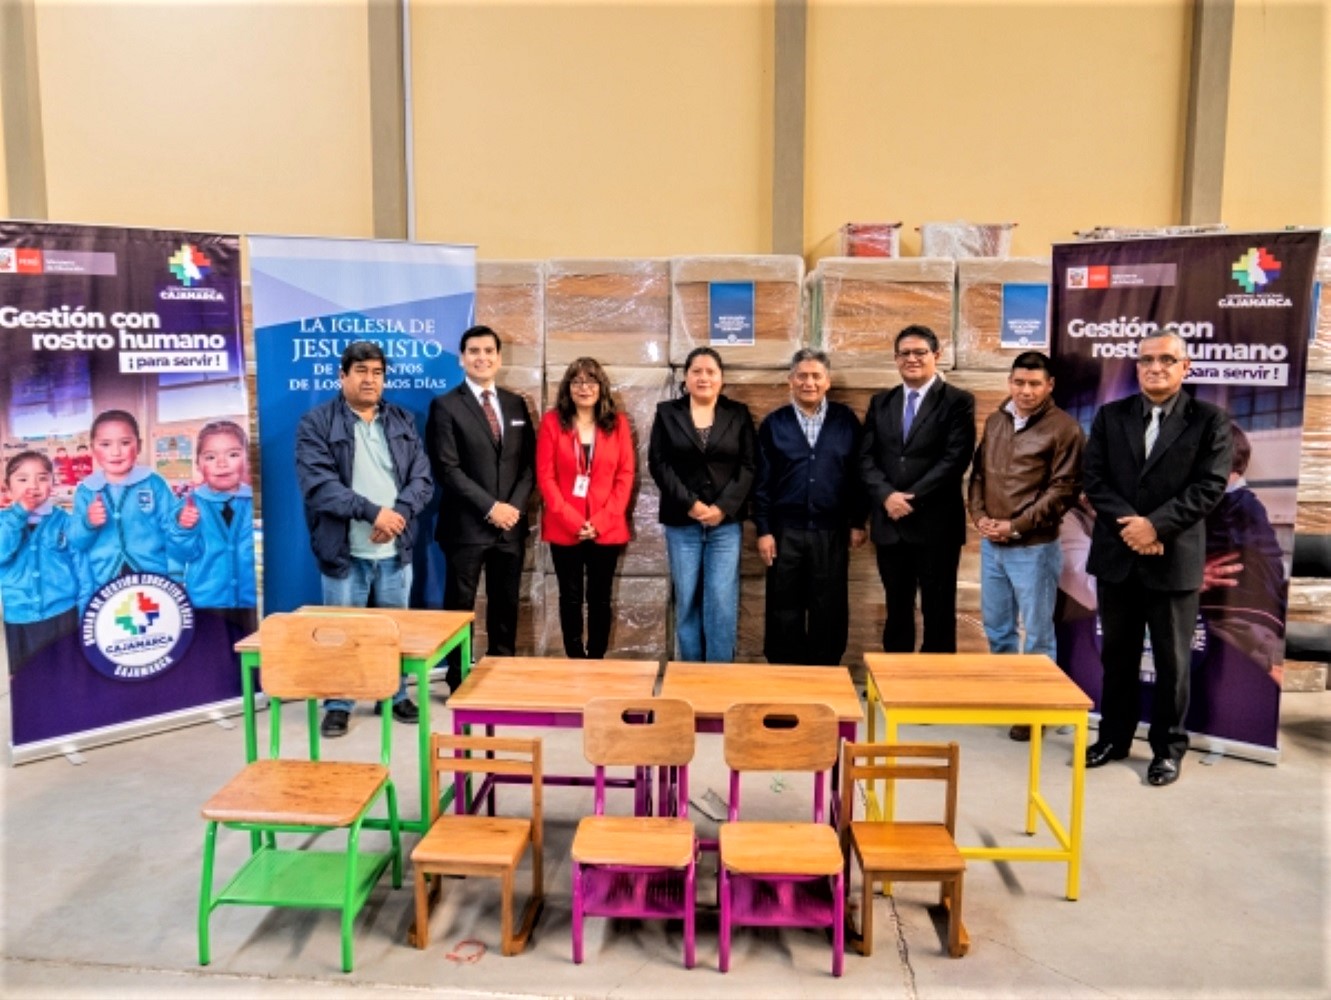 Iglesia de Jesucristo dona mobiliario escolar a centros educativos de la Unidad de Gestión Educativa Local – UGEL de Cajamarca.